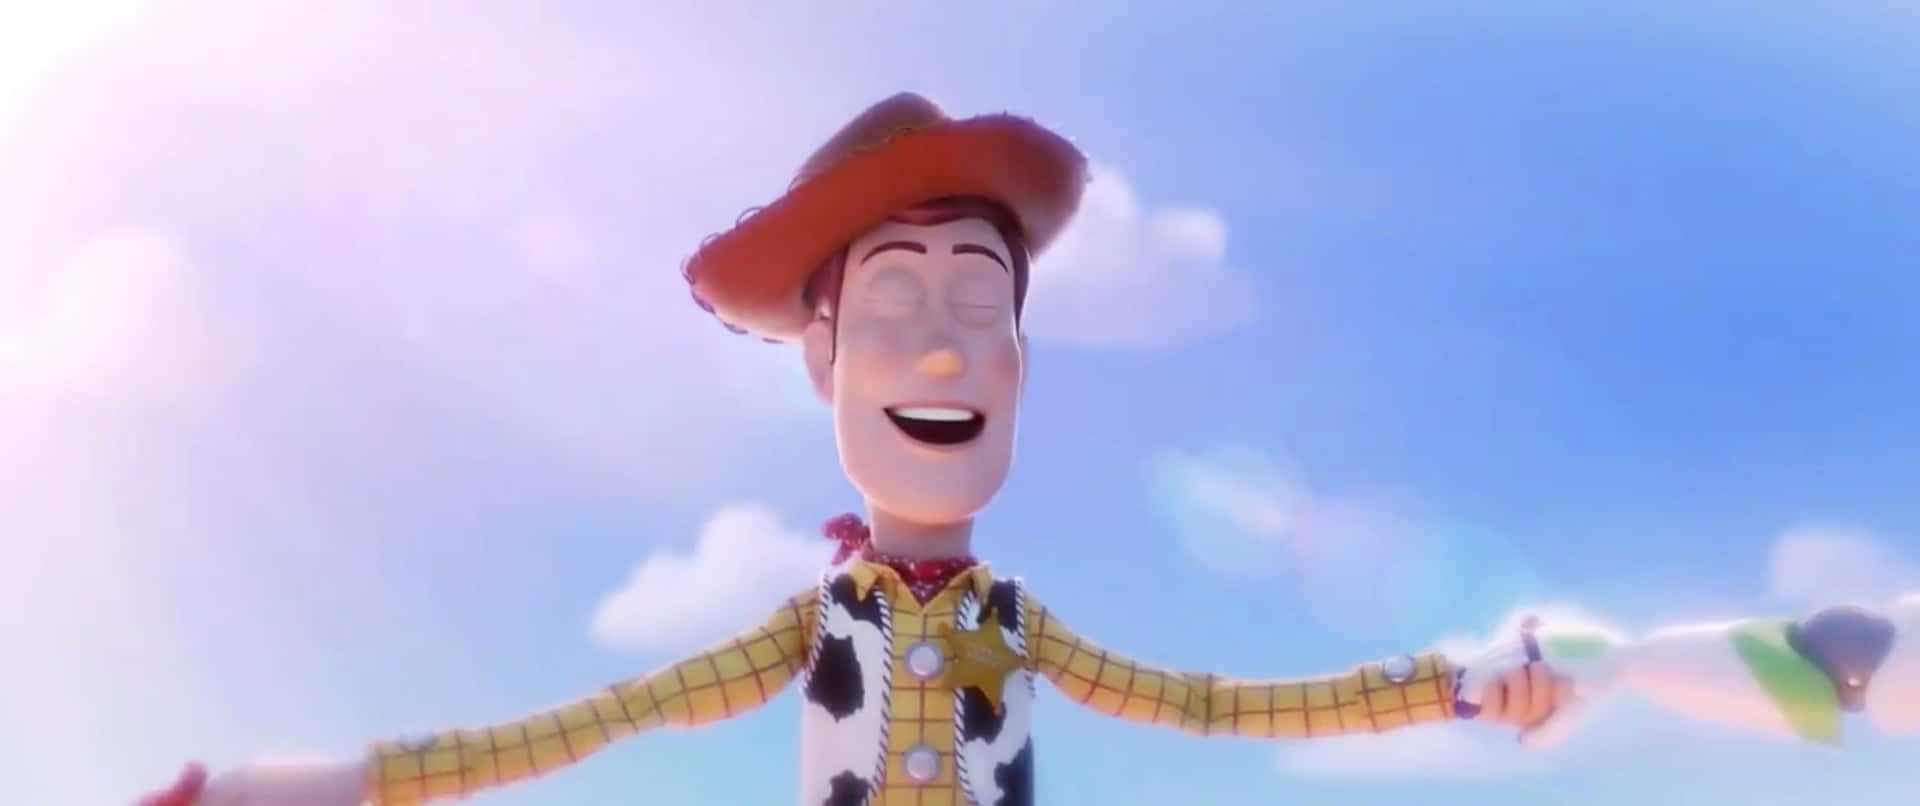 Dievorfreude Auf Die Premiere Von Toy Story 4 Steigt!